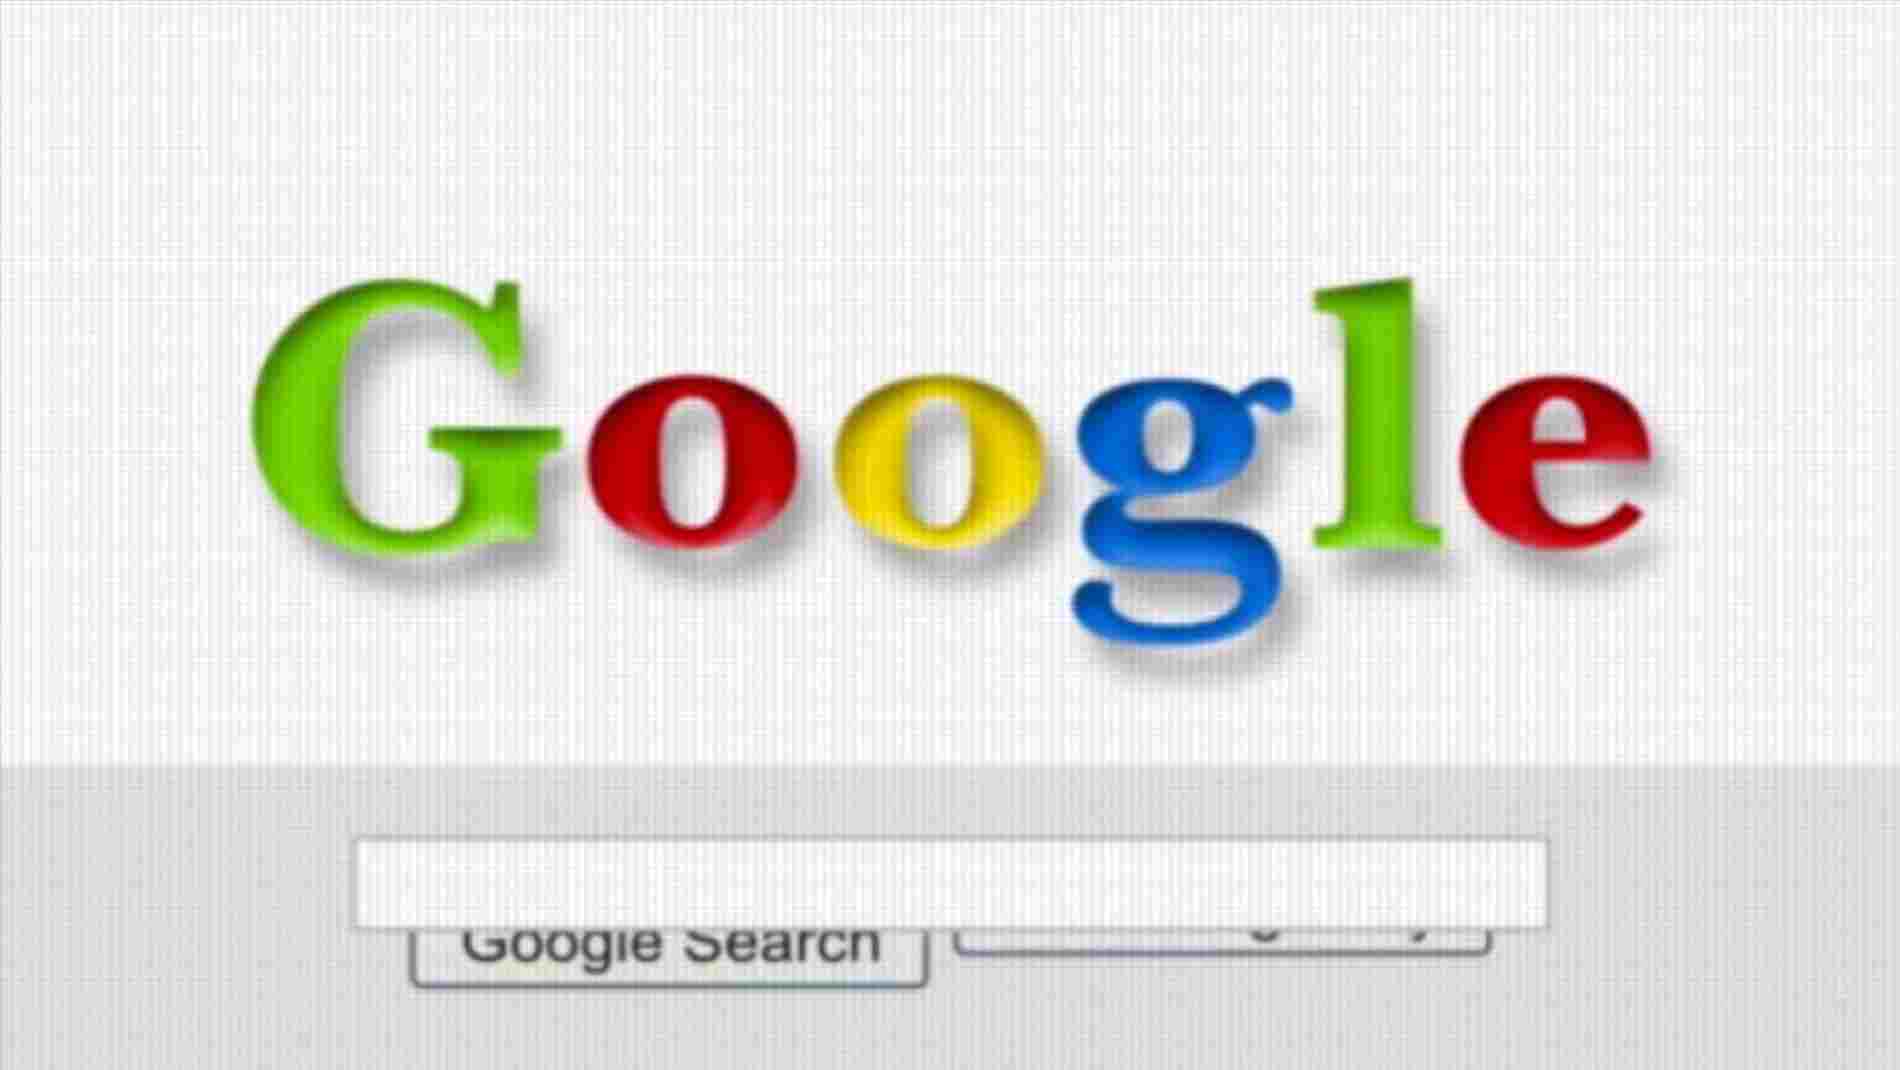 First Google Logo - first google logo ever.com